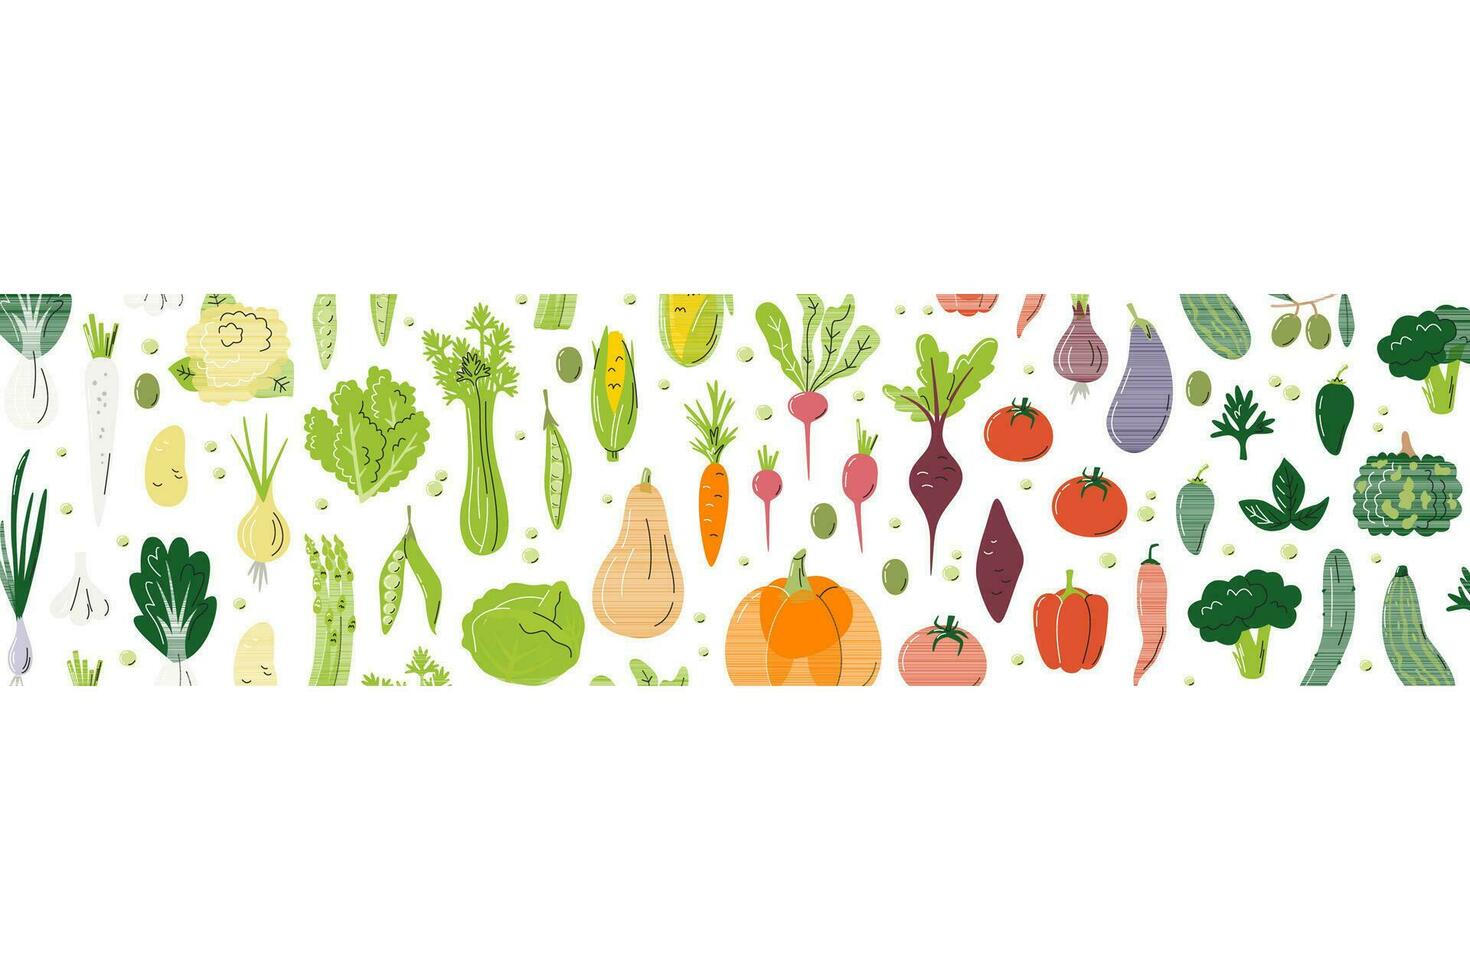 helling horizontaal concept ontwerp. regenboog samenstelling vol van verschillend groenten. rechthoek banier voor boer markt. divers groenten achtergrond. agrarisch hand- getrokken vlak vector illustratie